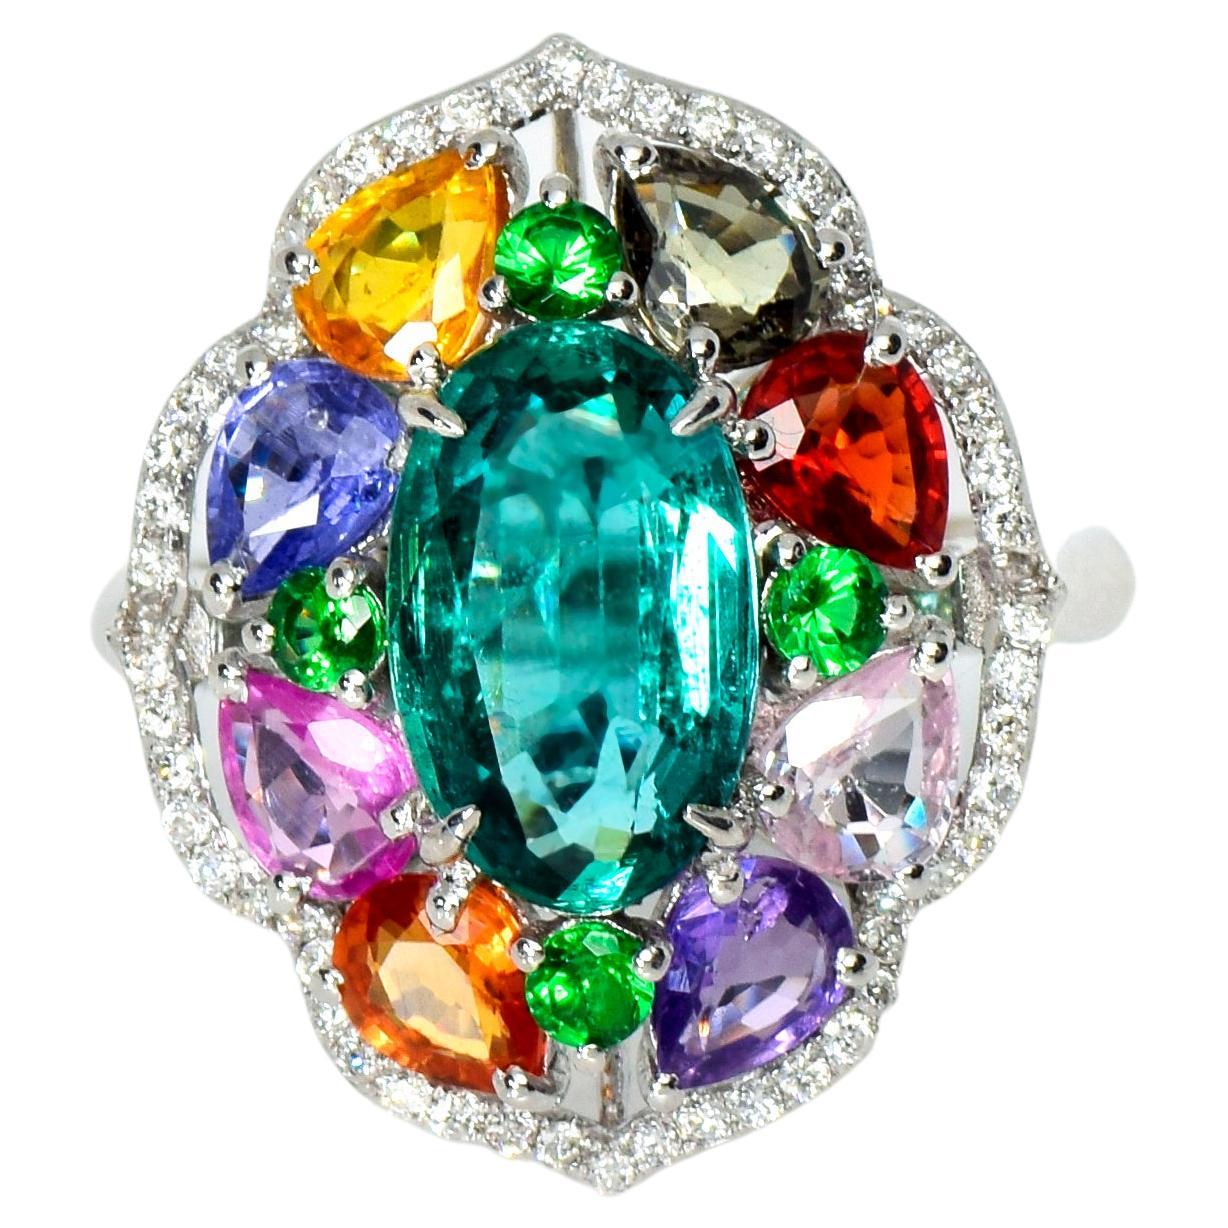 IGI 18K 2.31 Carat Emerald &Sapphires Antique Art Deco Engagement Ring